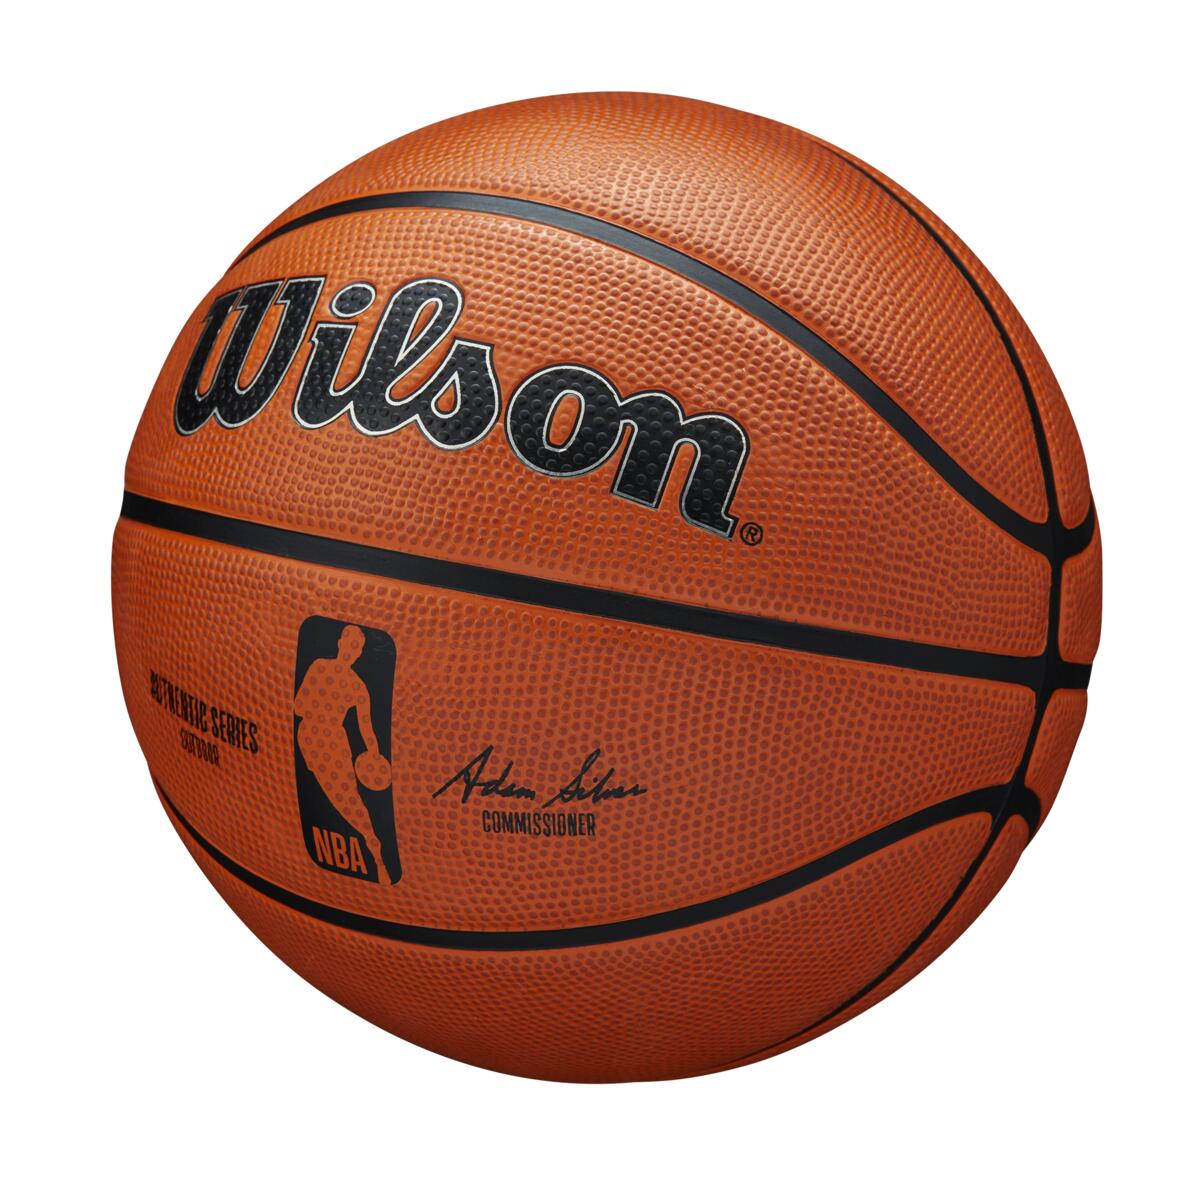 Bola de Basquete NBA Authentic Series Outdoor #7